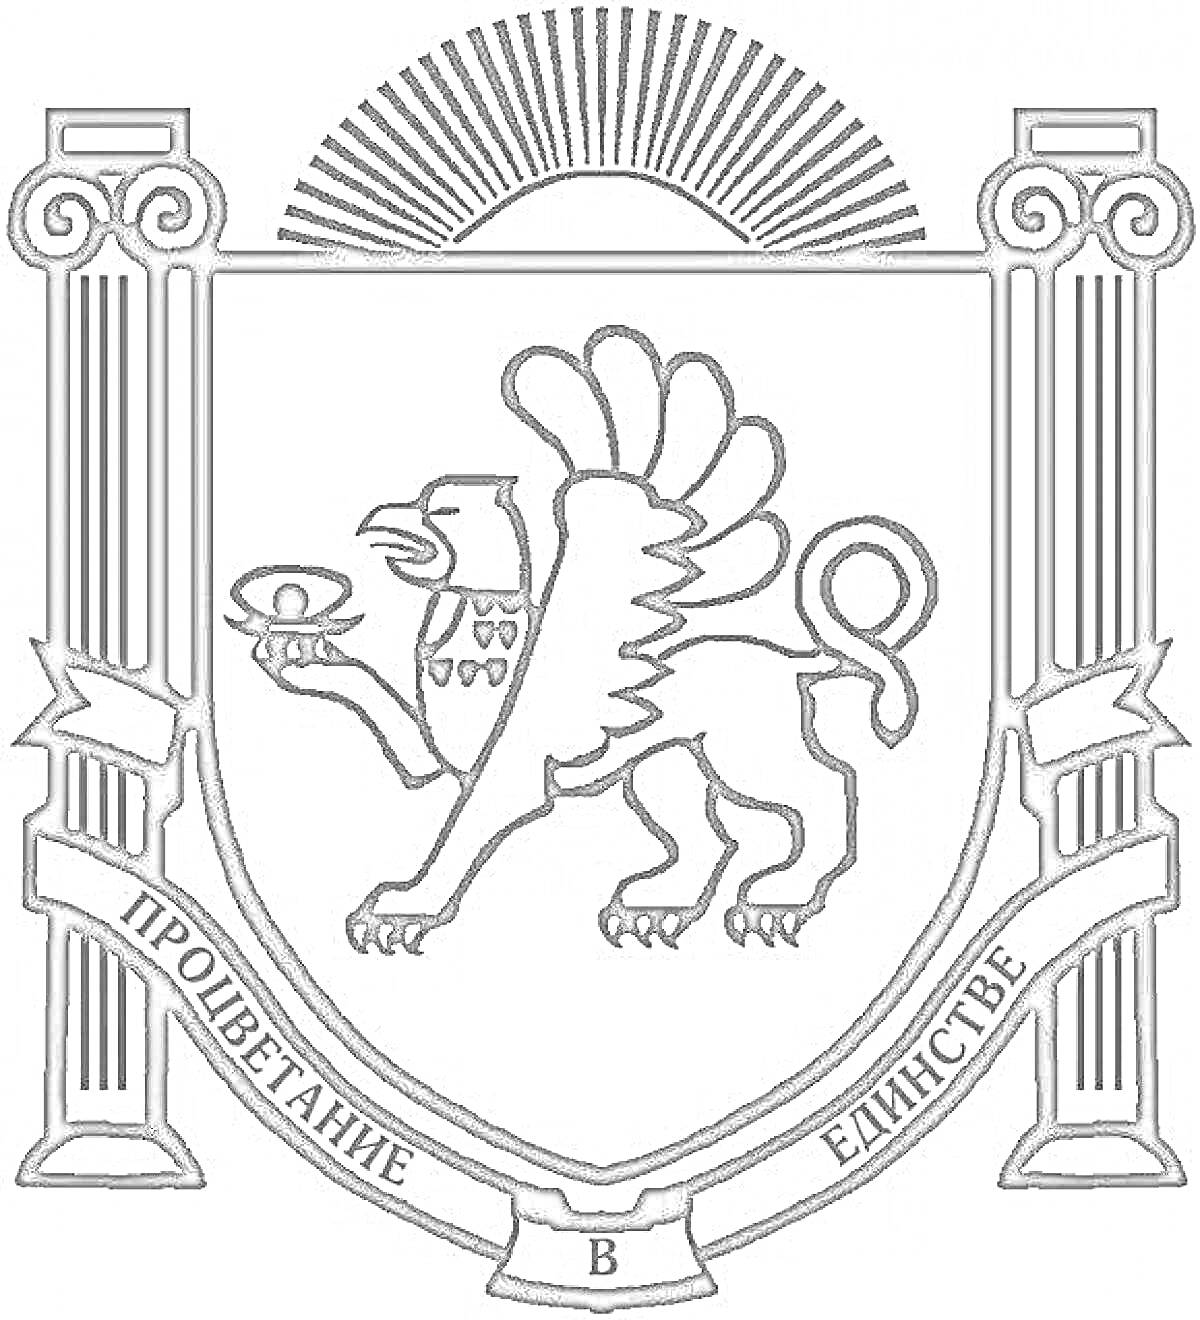 Раскраска Герб Крыма с изображением грифона, держащего чашу, на фоне двух колонн и восходящего солнца. Лента с надписью 